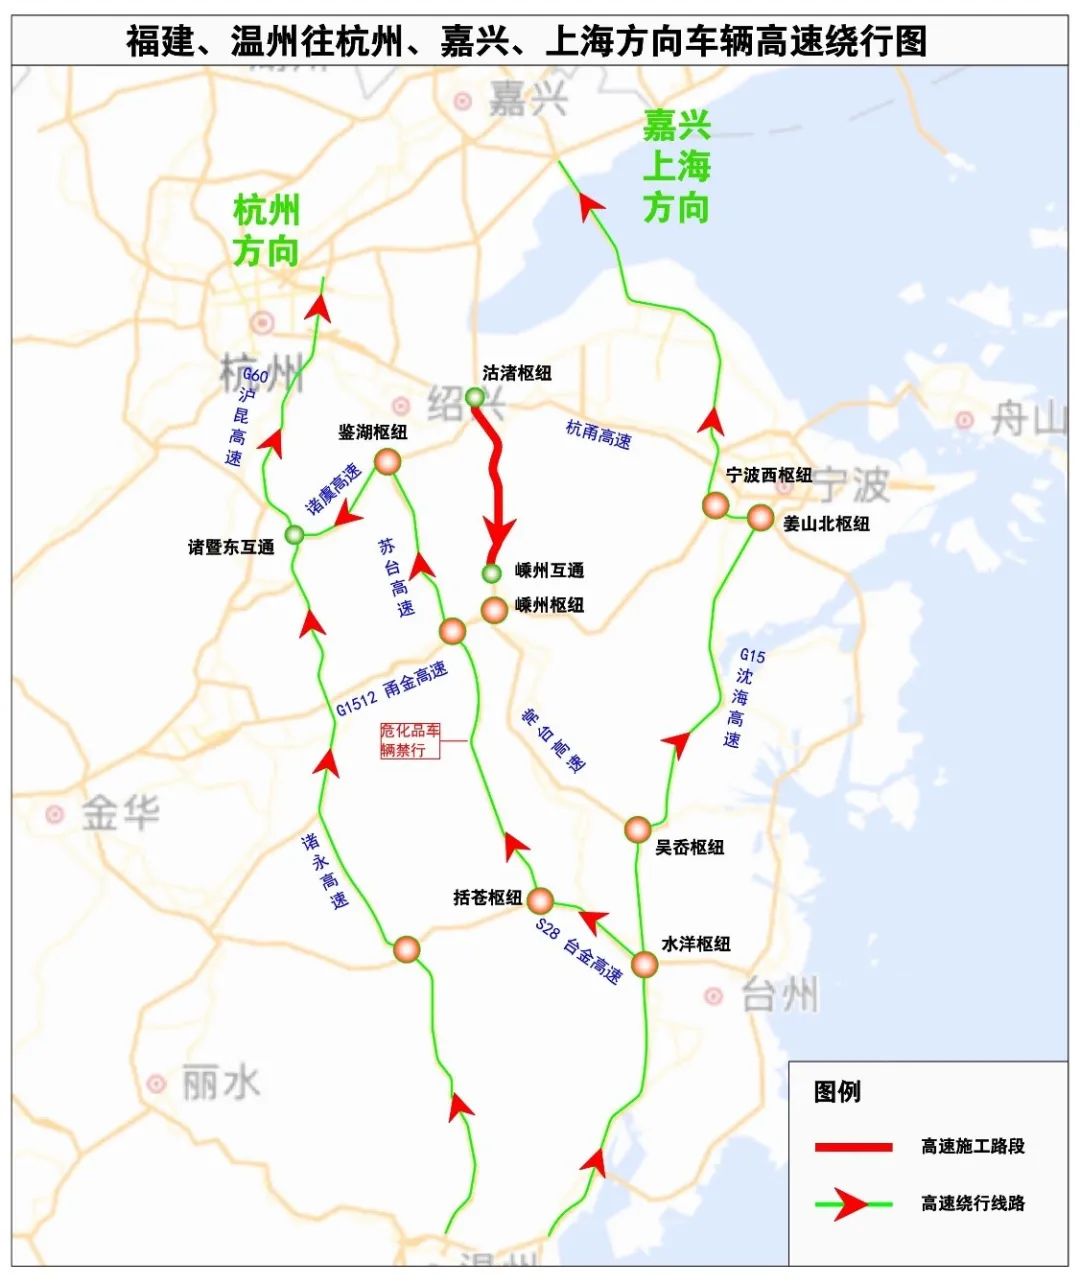 新昌527国道线路图图片